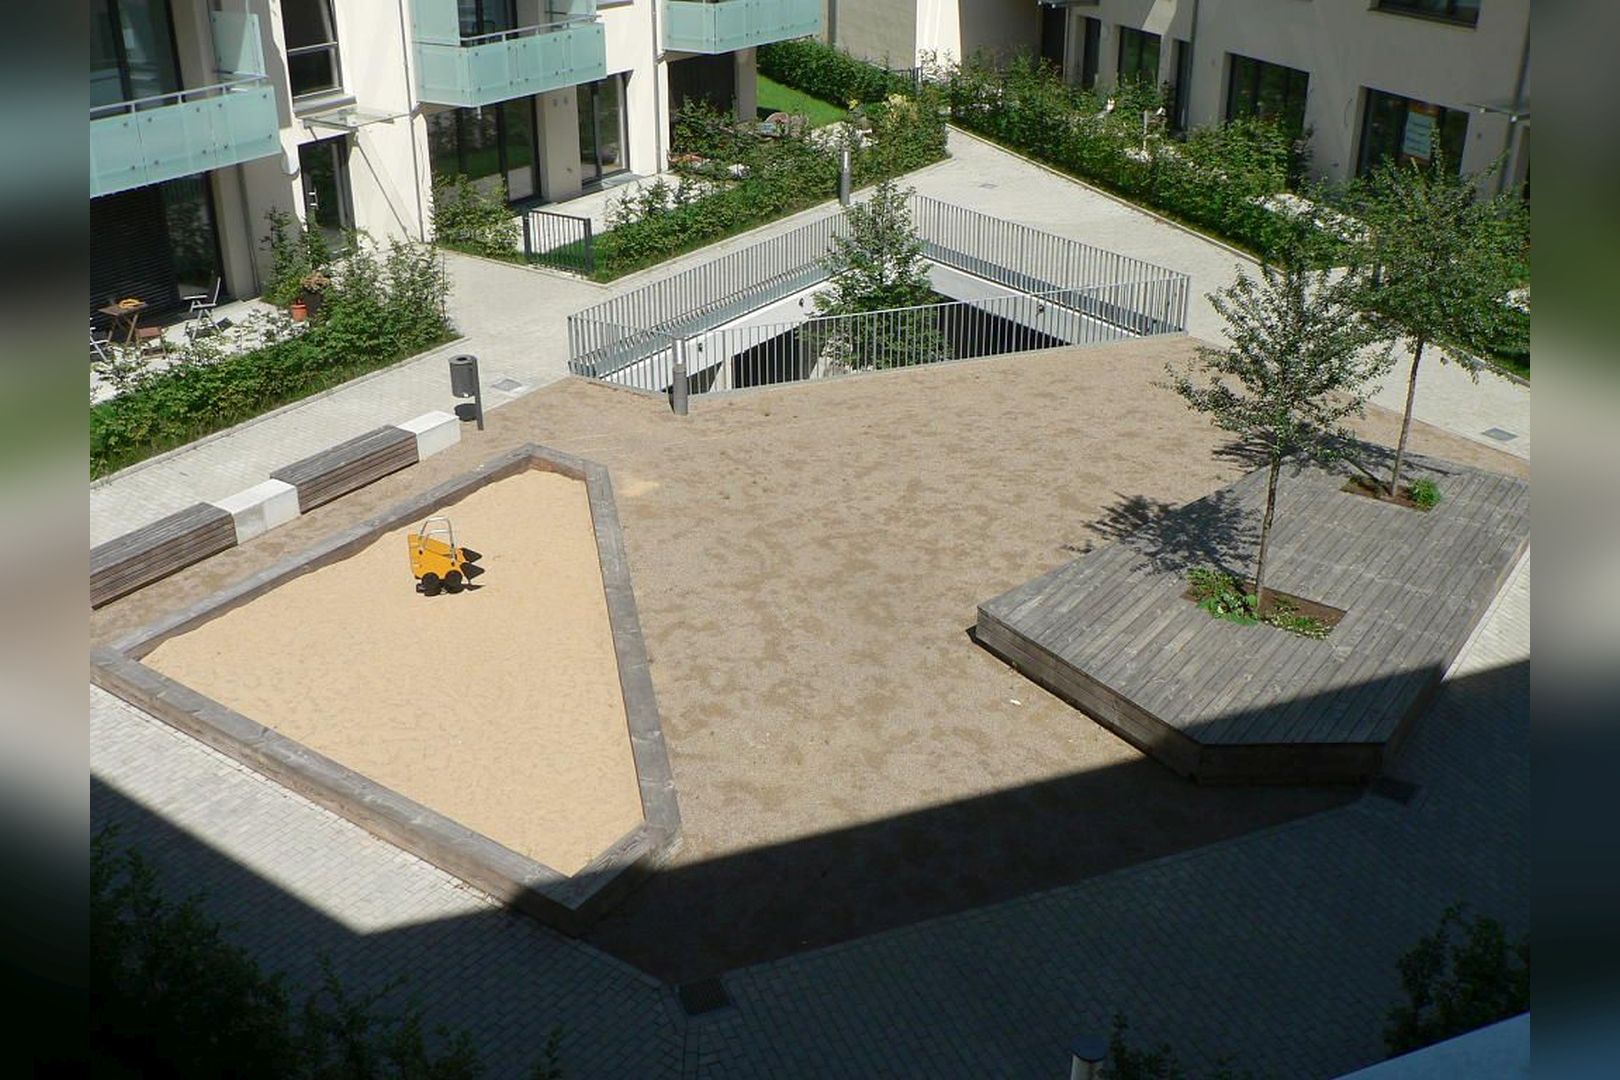 Immobilie Nr.Hilden 005 - 2-Raum-Maisonette-Wohnung mit Terrasse & Gärtchen - Bild 8.jpg